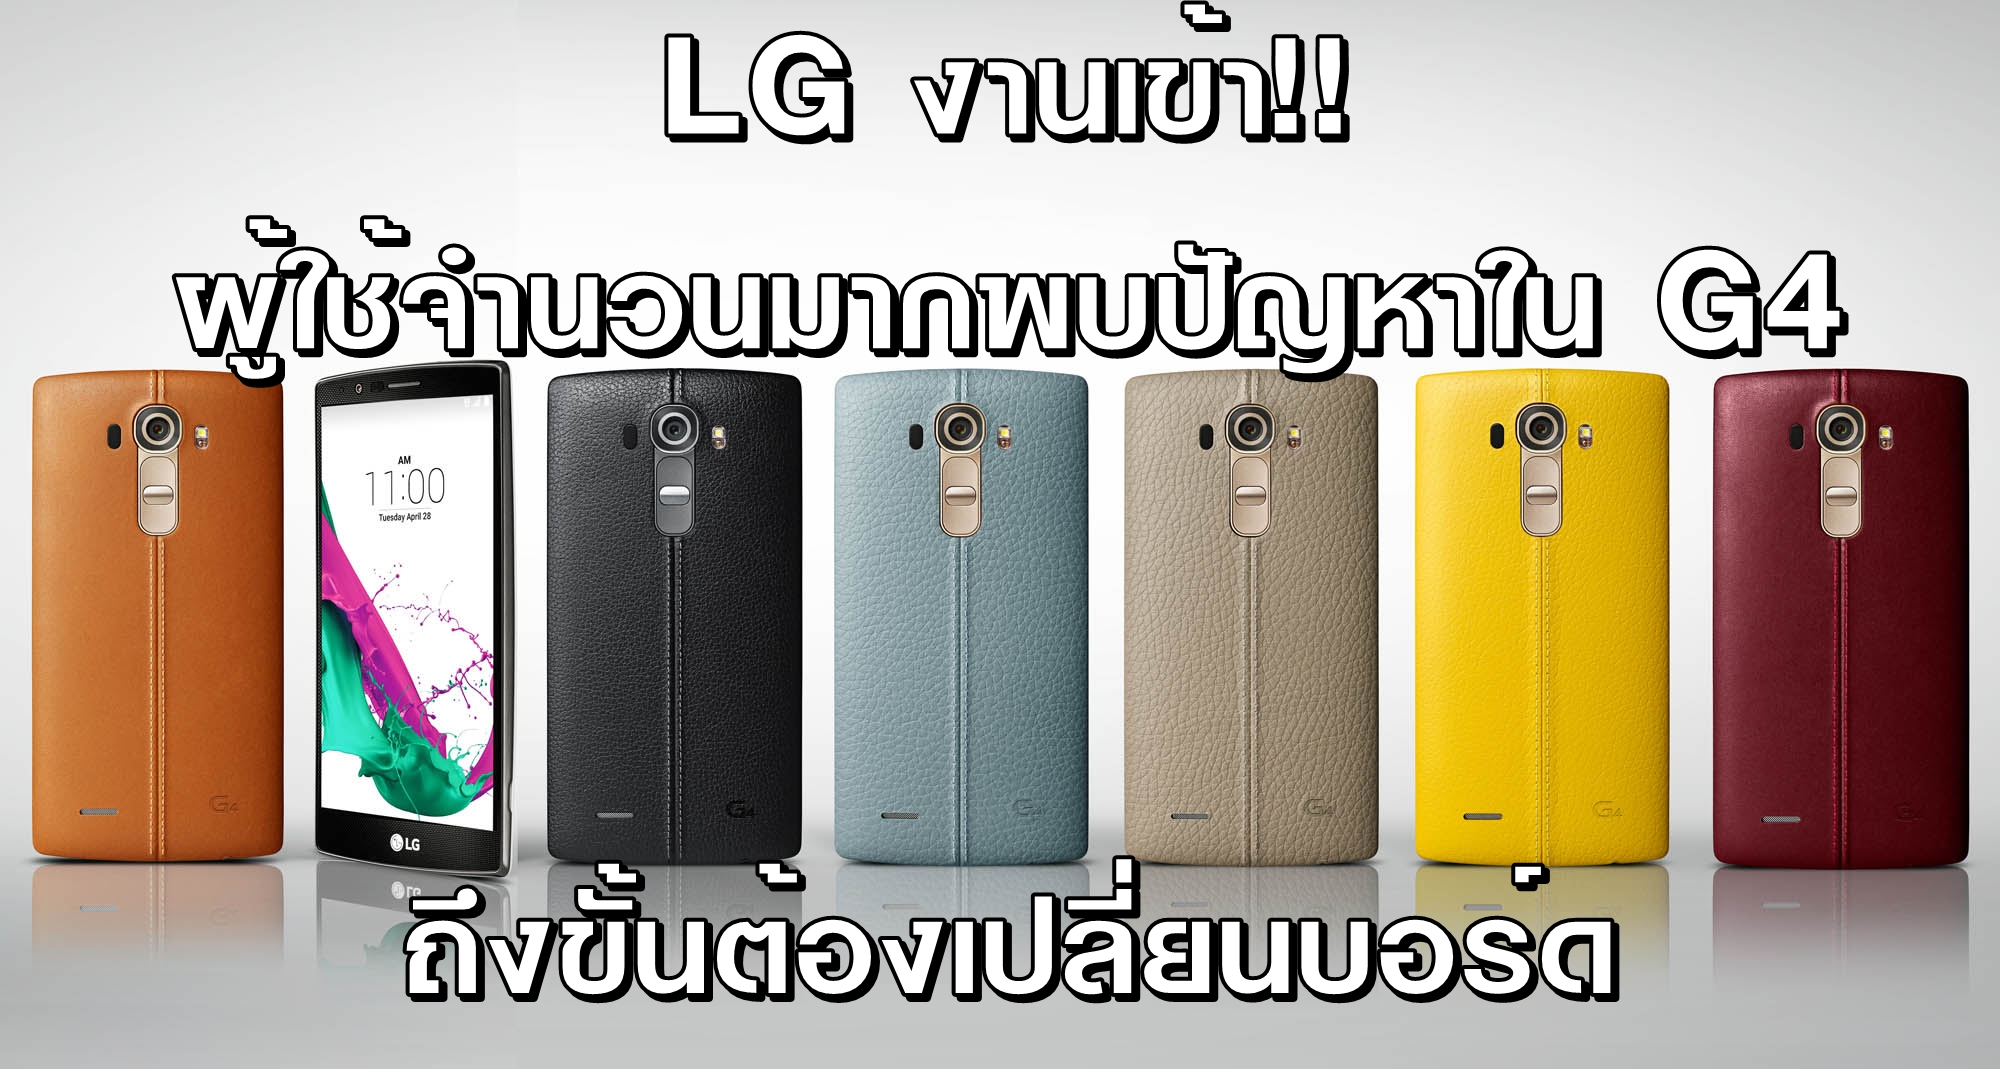 LG งานเข้า! ผู้ใช้จำนวนมากพบปัญหาใน LG G4 ถึงขั้นต้องเปลี่ยนบอร์ด